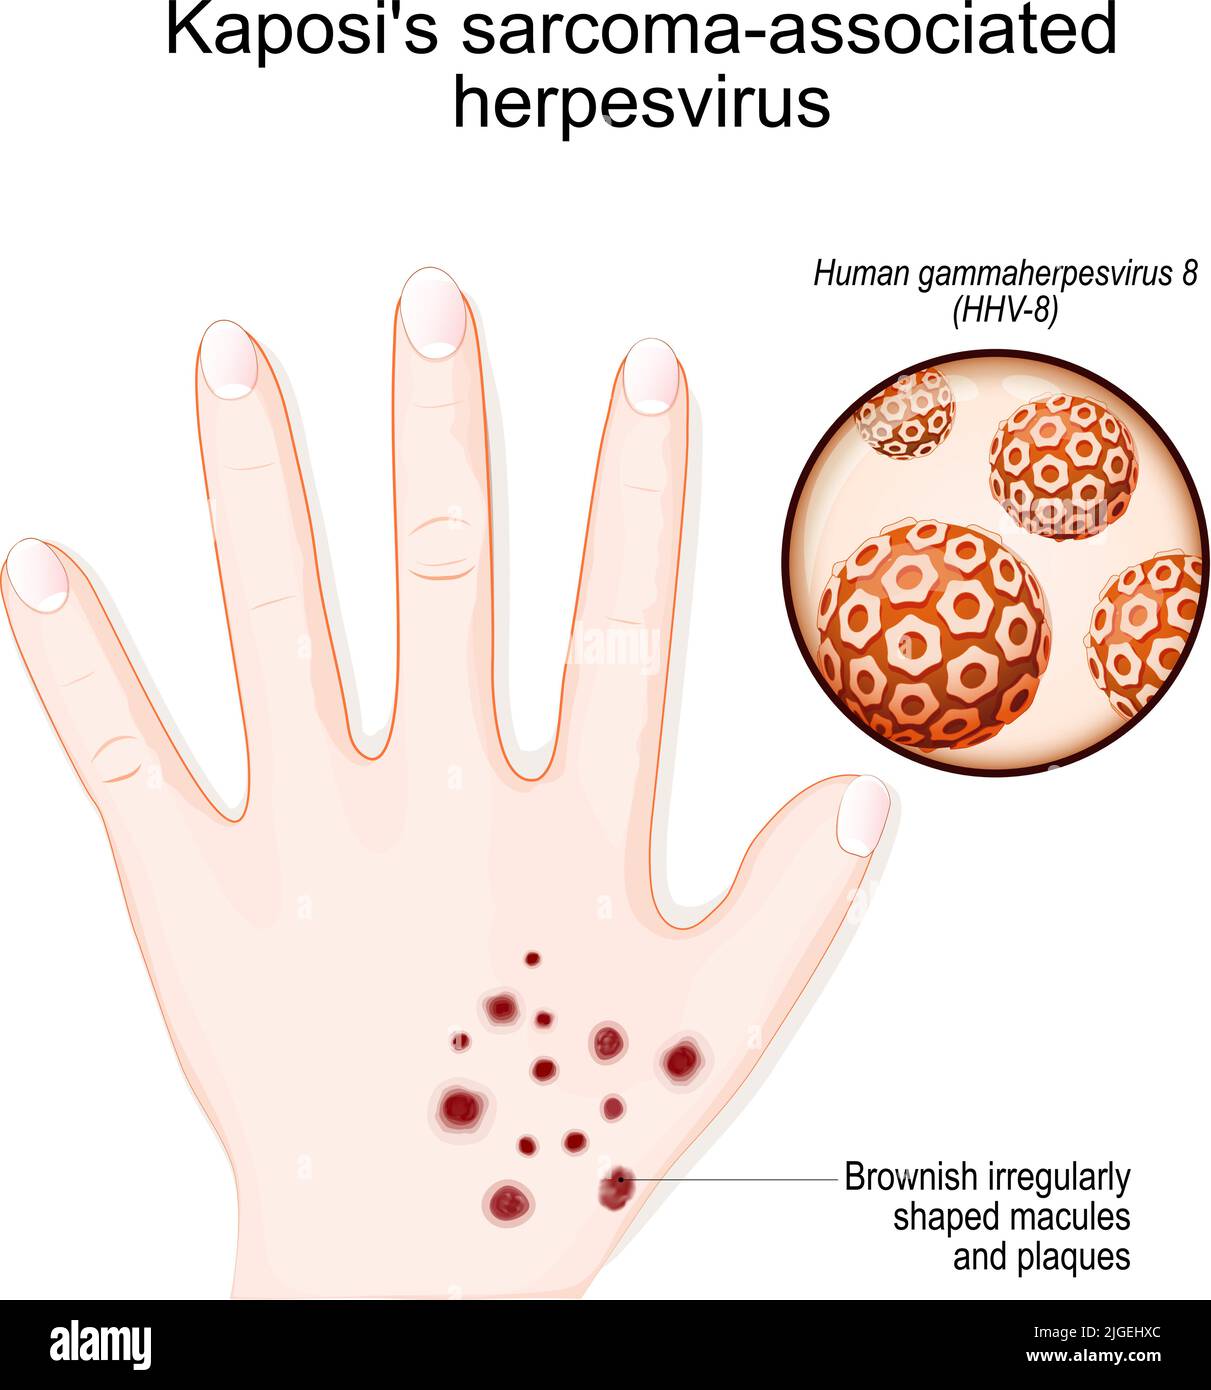 Herpesvirus asociado al sarcoma de Kaposi. Mano humana con máculas y placas parduscas de forma irregular. Primer plano del virus de la gammaherpesvirus humano (HHV-8) Ilustración del Vector